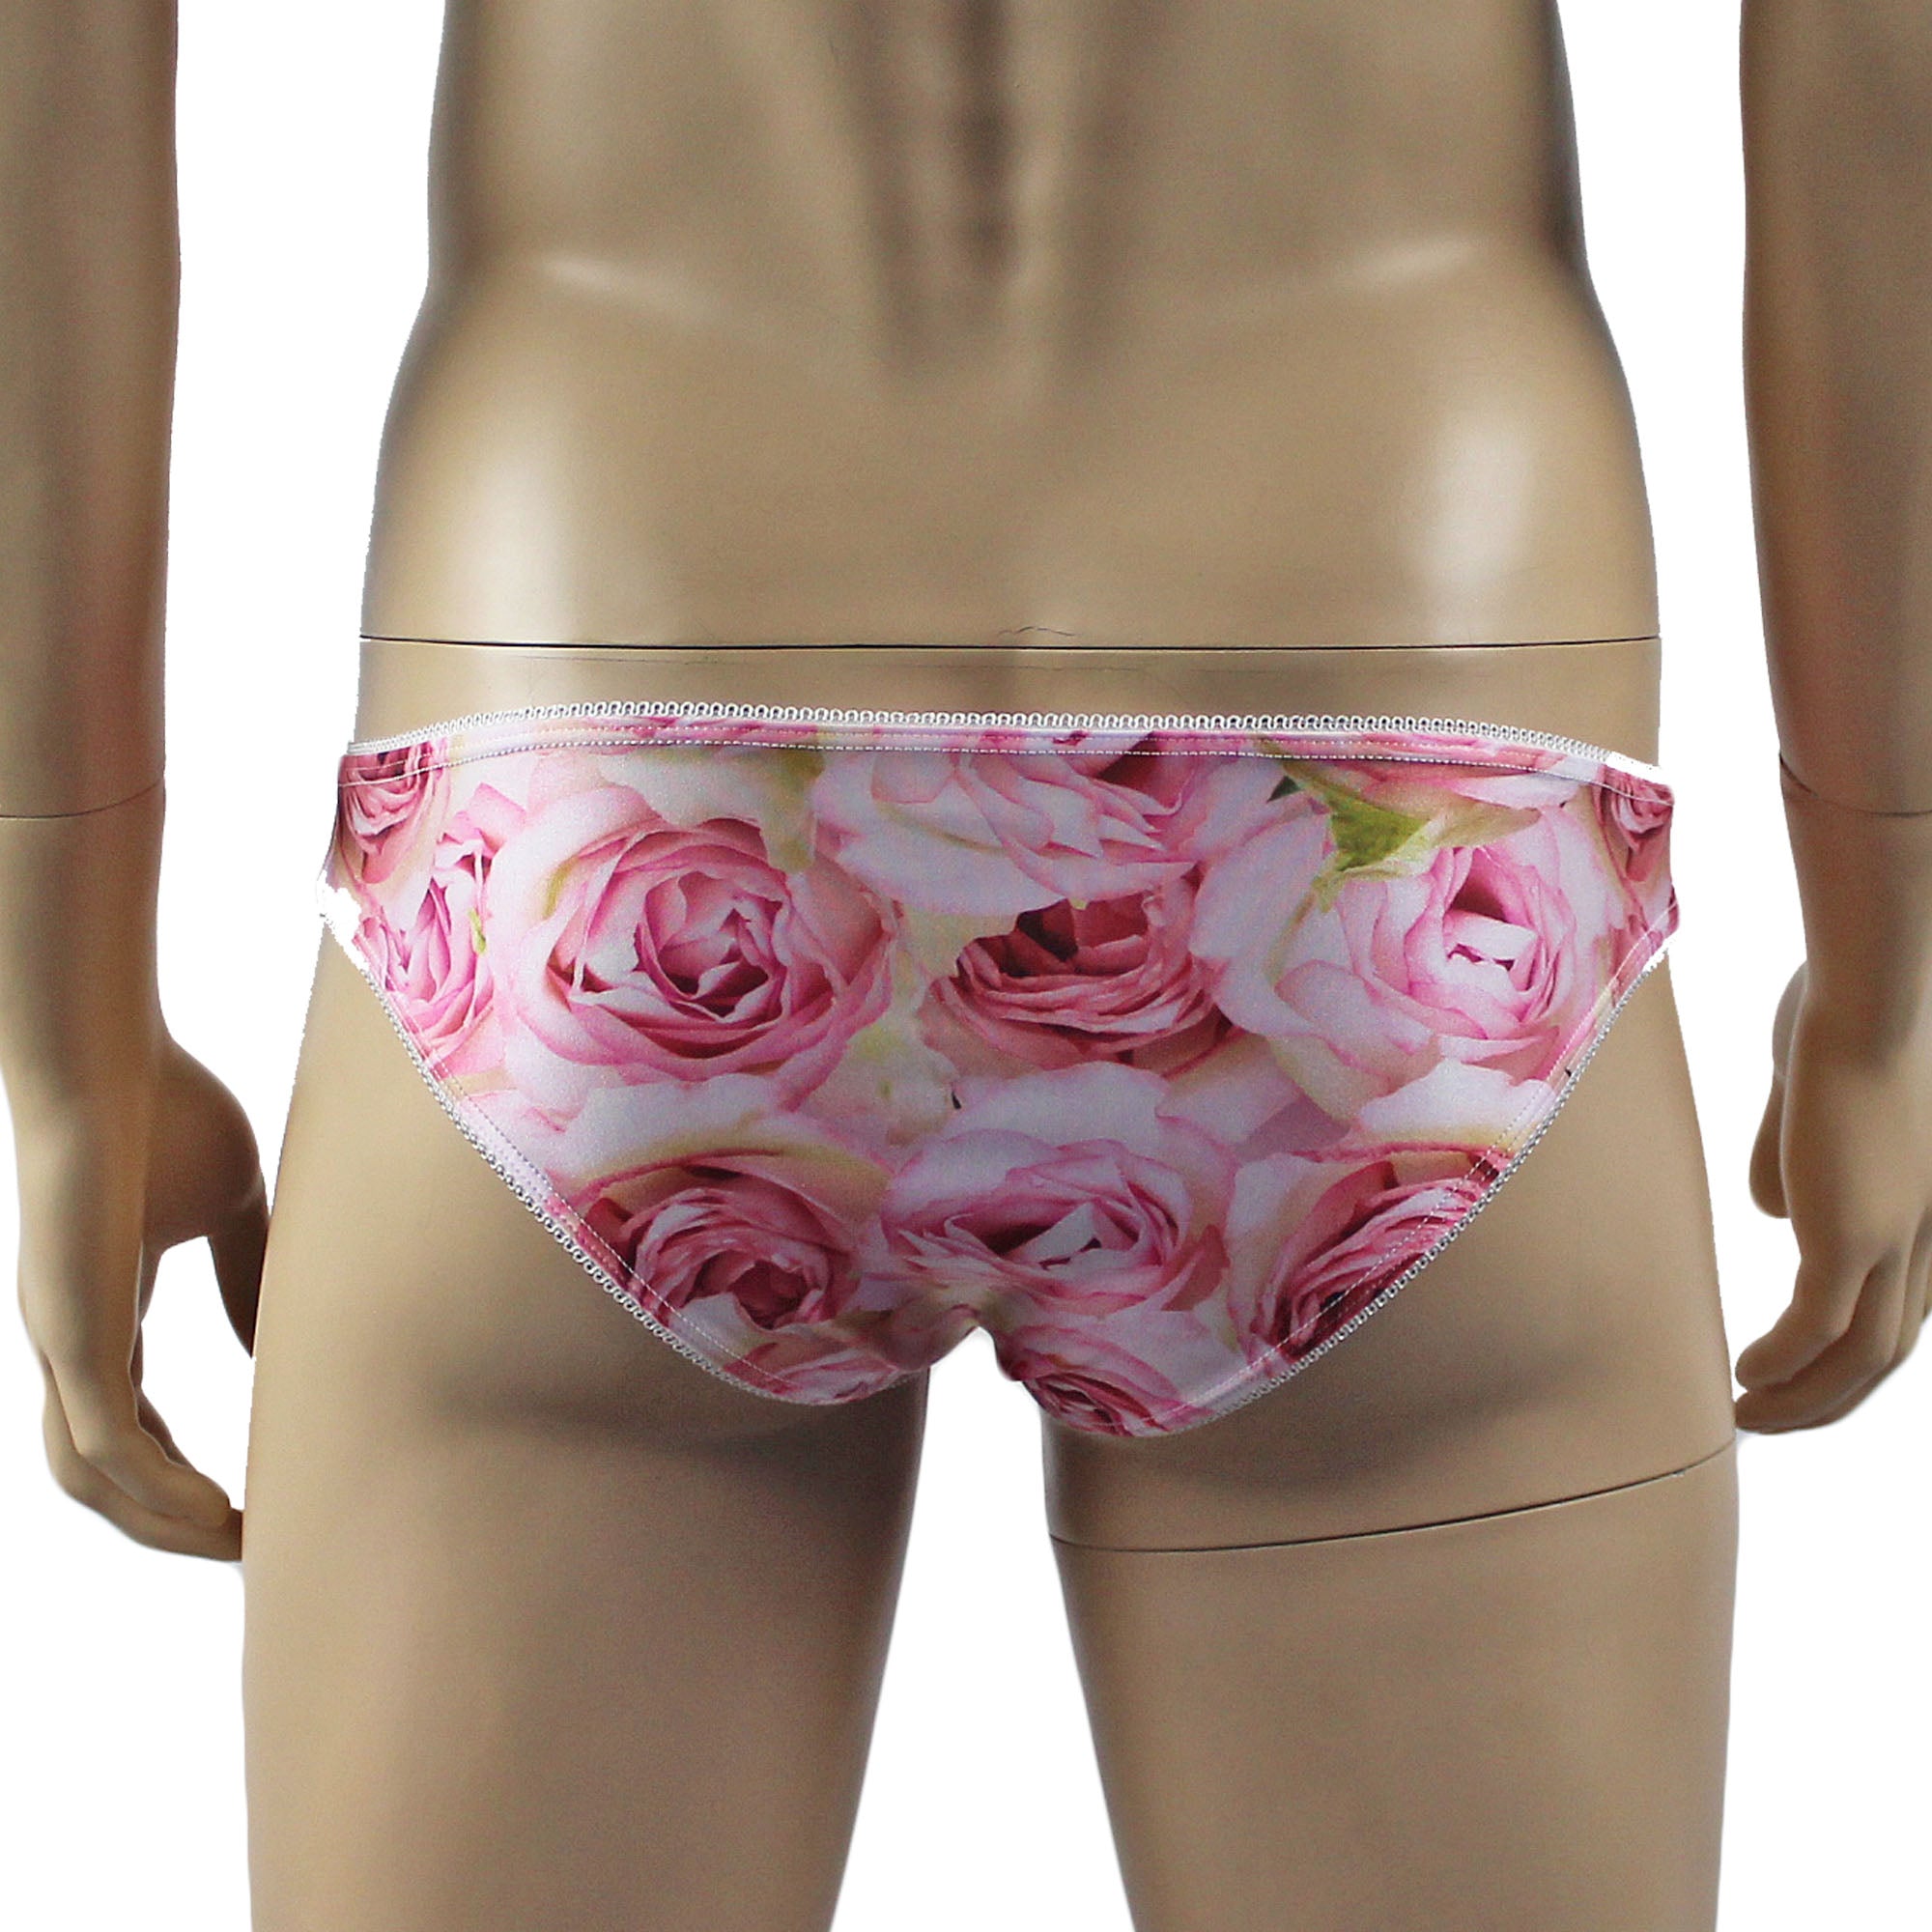 Mens Roses Spandex Bra Top and Bikini Brief with Elastic Pico Trim Pink